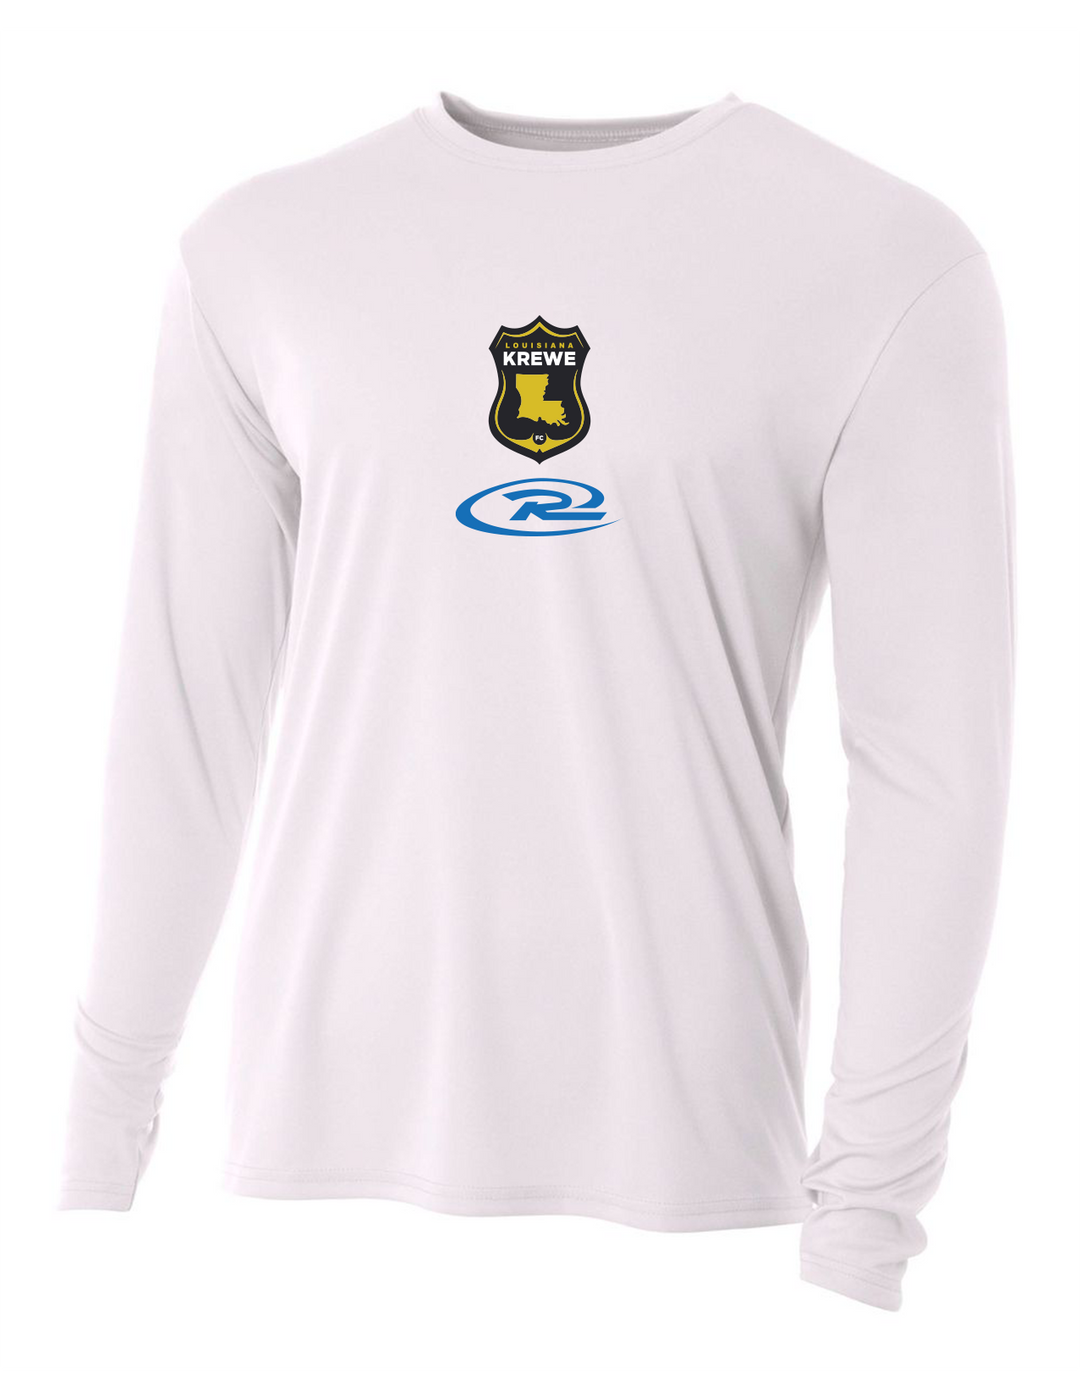 A4 La Krewe-Rush Long-Sleeve Shirt FC - Black, Silver Or White LA KREWE RUSH White Mens Small - Third Coast Soccer